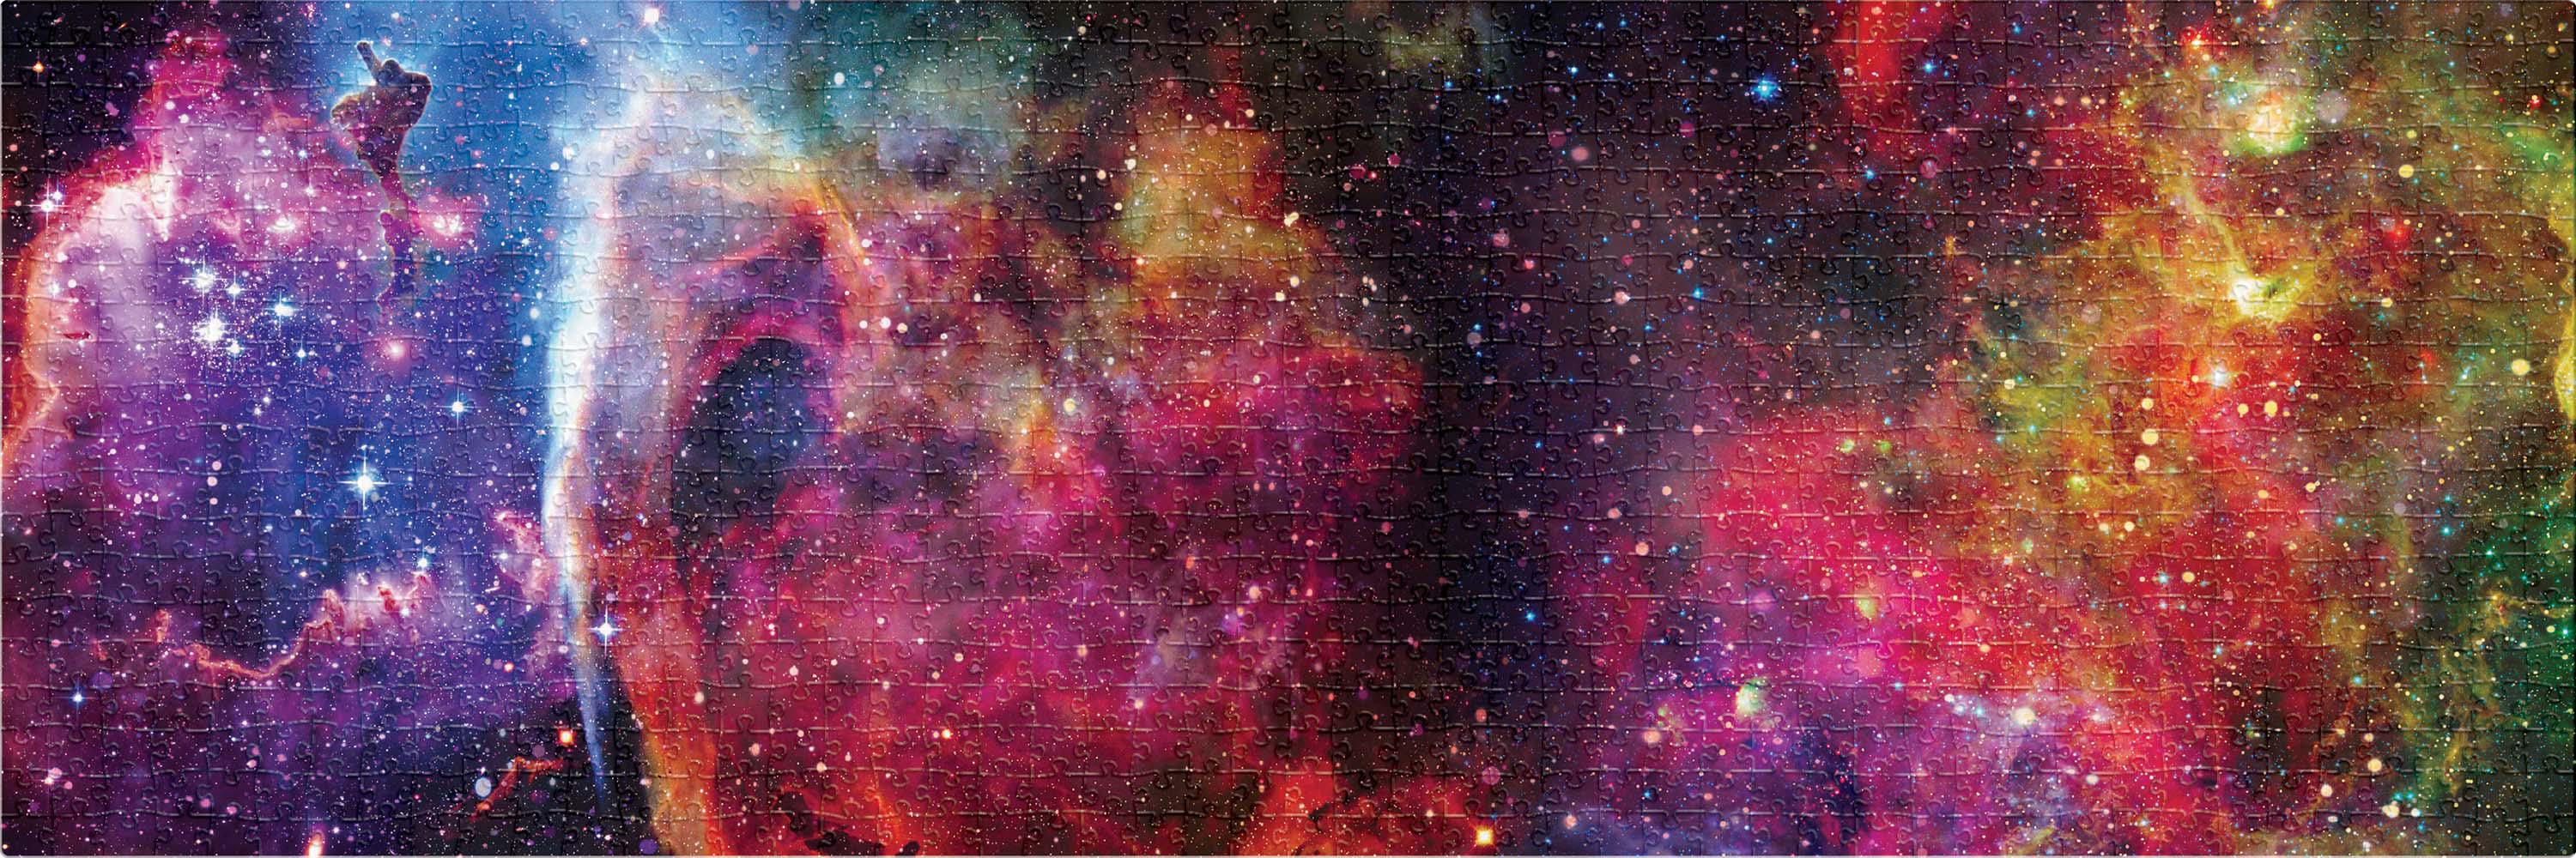 Пазлы трехслойные Interdruk Galaxy 1, панорамные, 1000 элементов - фото 2